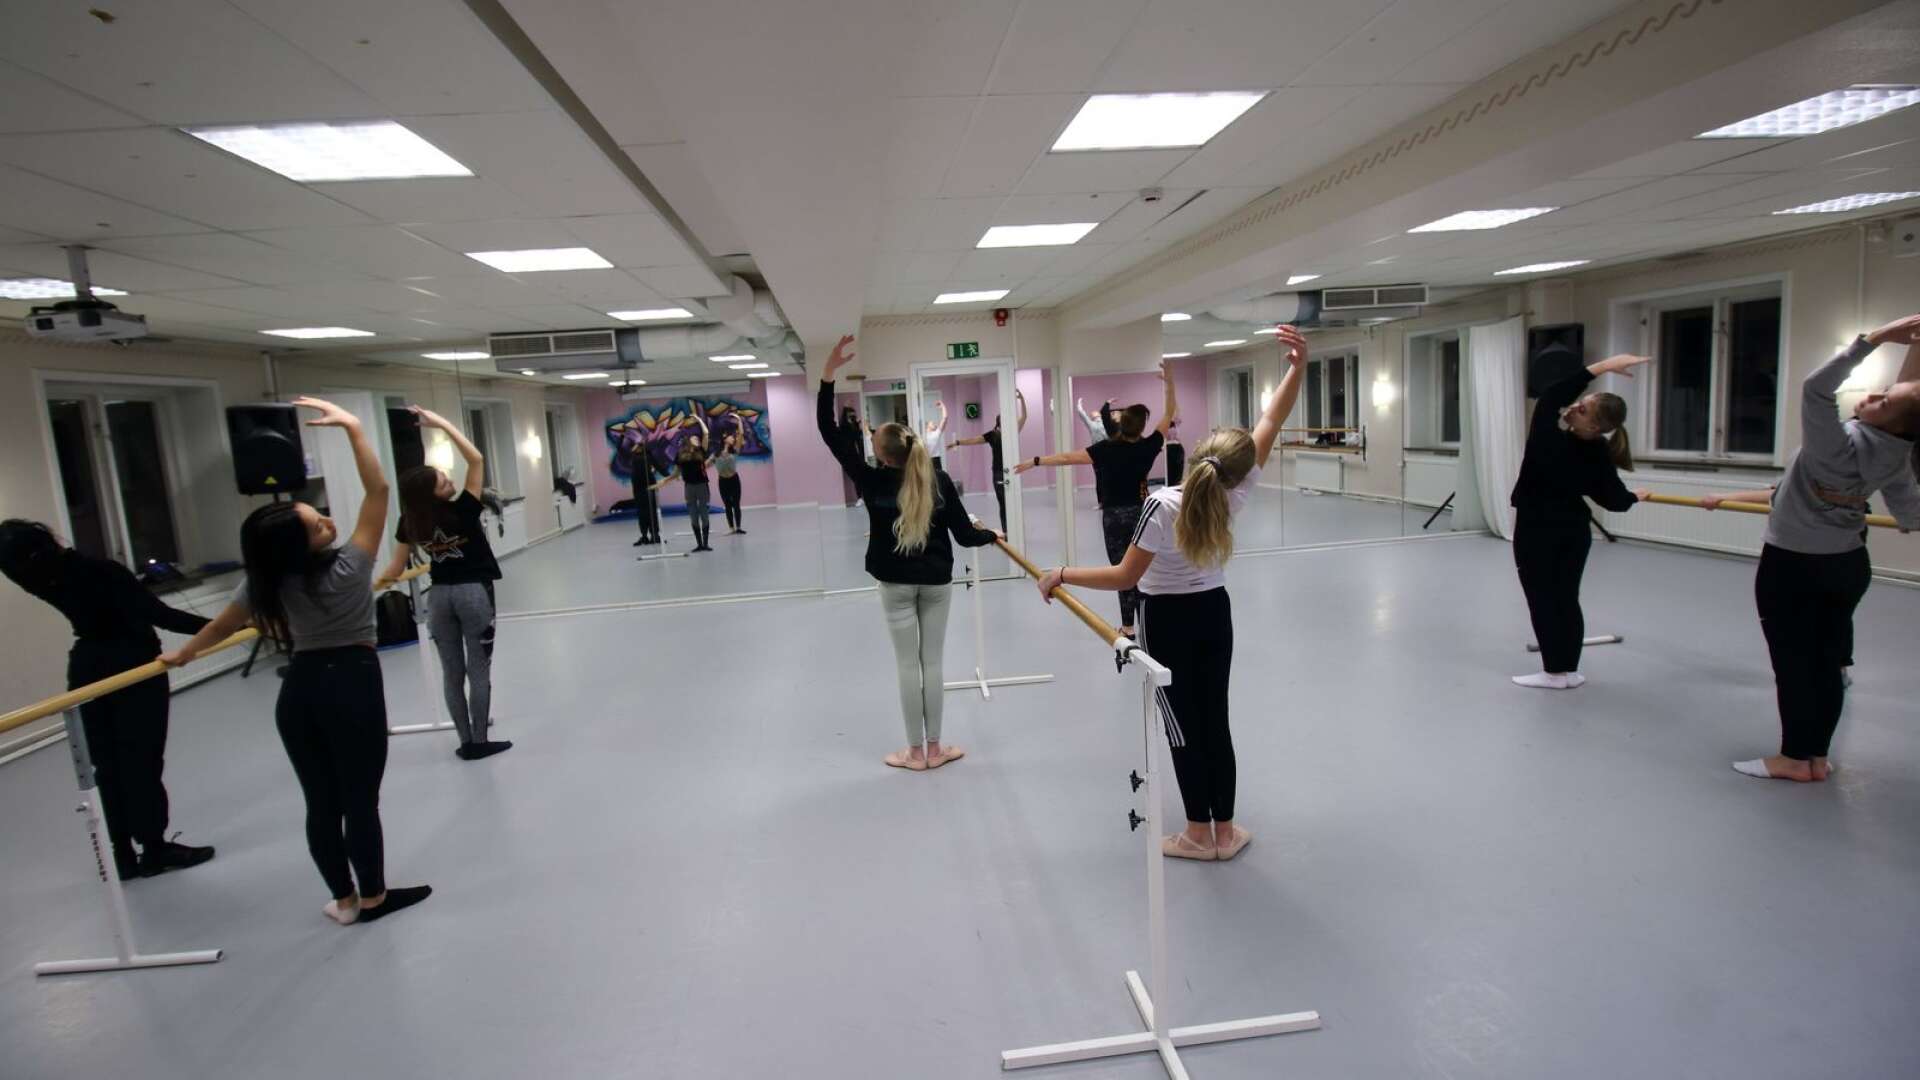 Dansundervisning i sal kan få ta en paus om Kulturskolan behöver gå över till digital undervisning. I Degerfors har beslut tagits att all gruppundervisning får vänta.